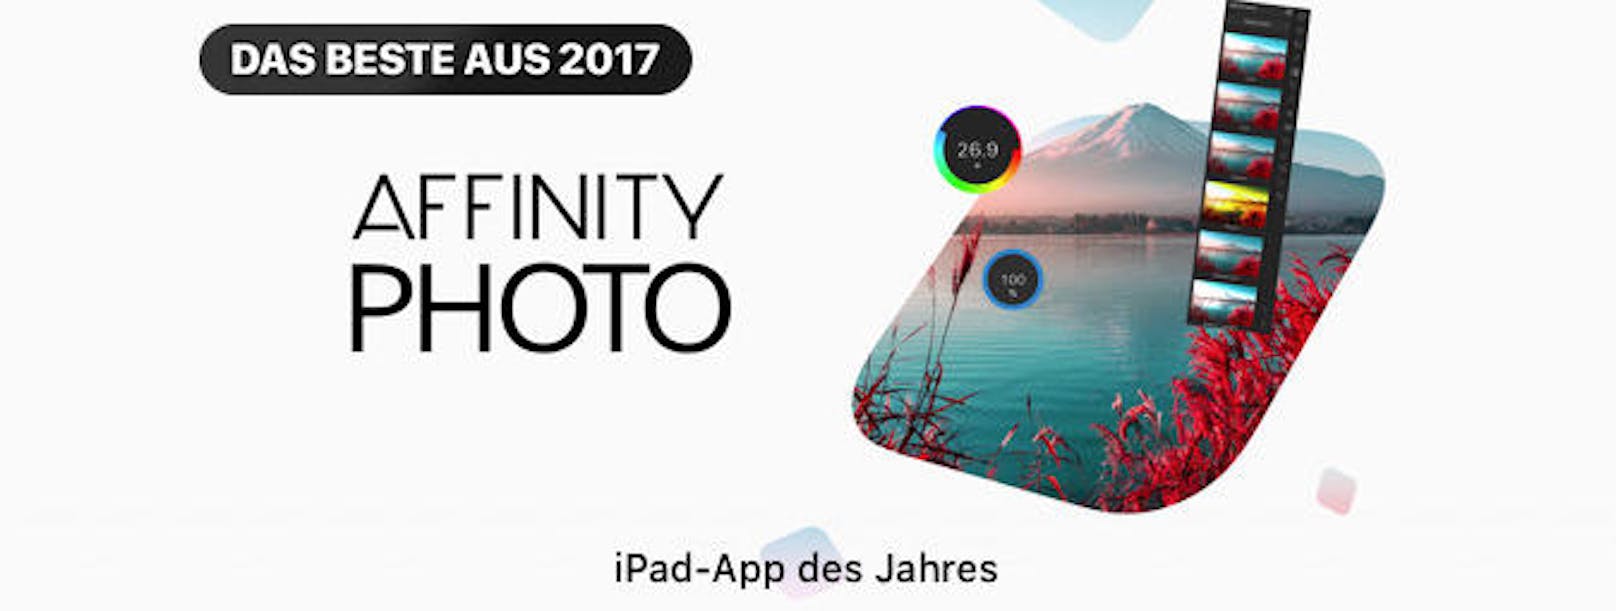 ... und für das iPad die Fotobearbeitungs-App "Affinity Photo".